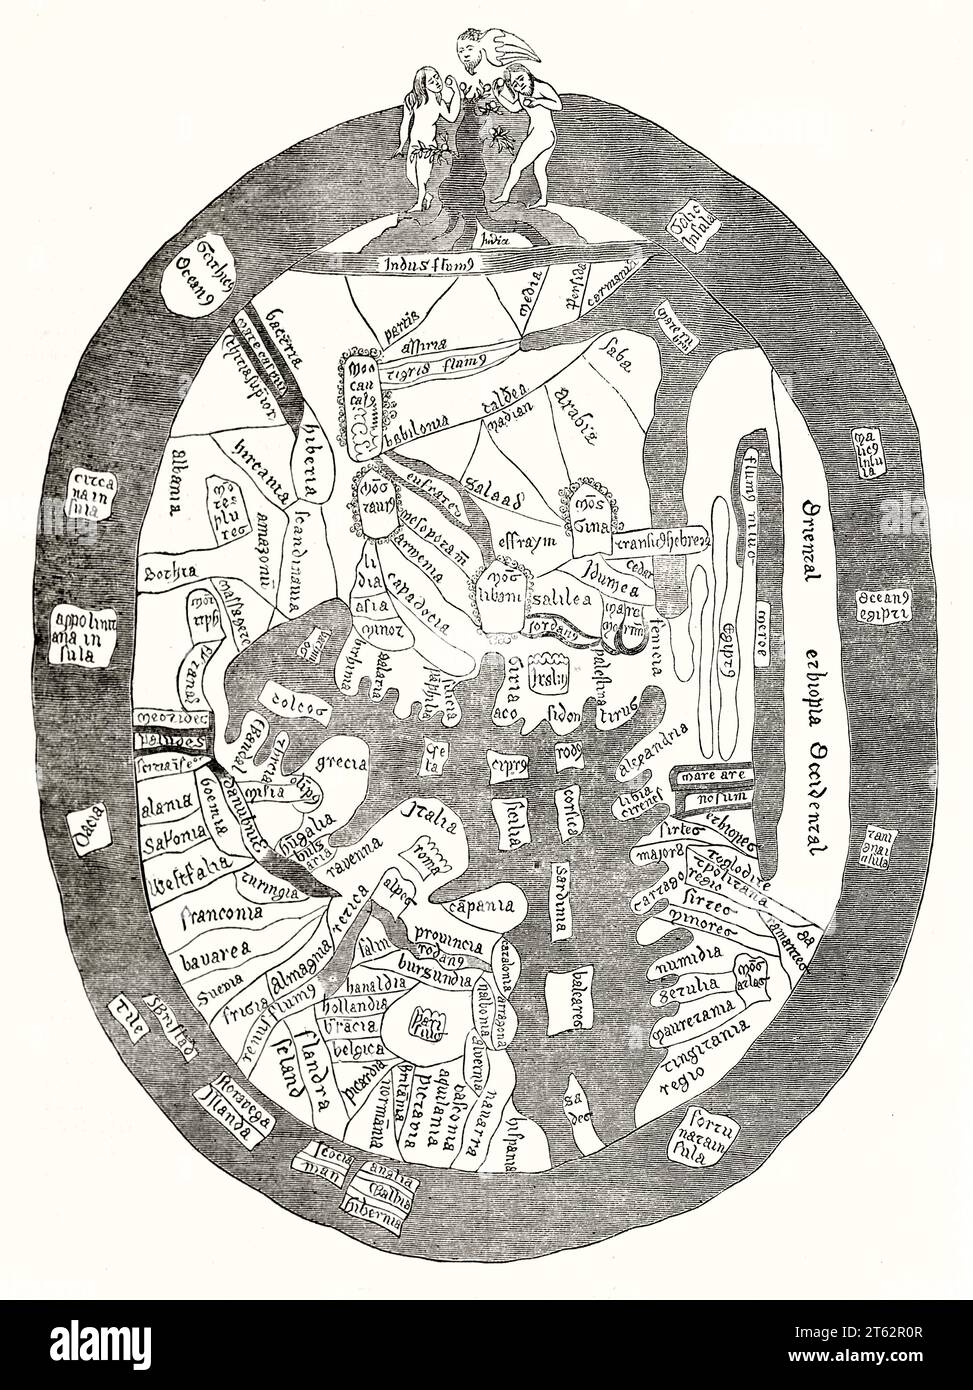 Carte du monde antique (14e siècle). D'après Ranulphe de Hyggeden, publ. Sur magasin pittoresque, Paris, 1849 Banque D'Images